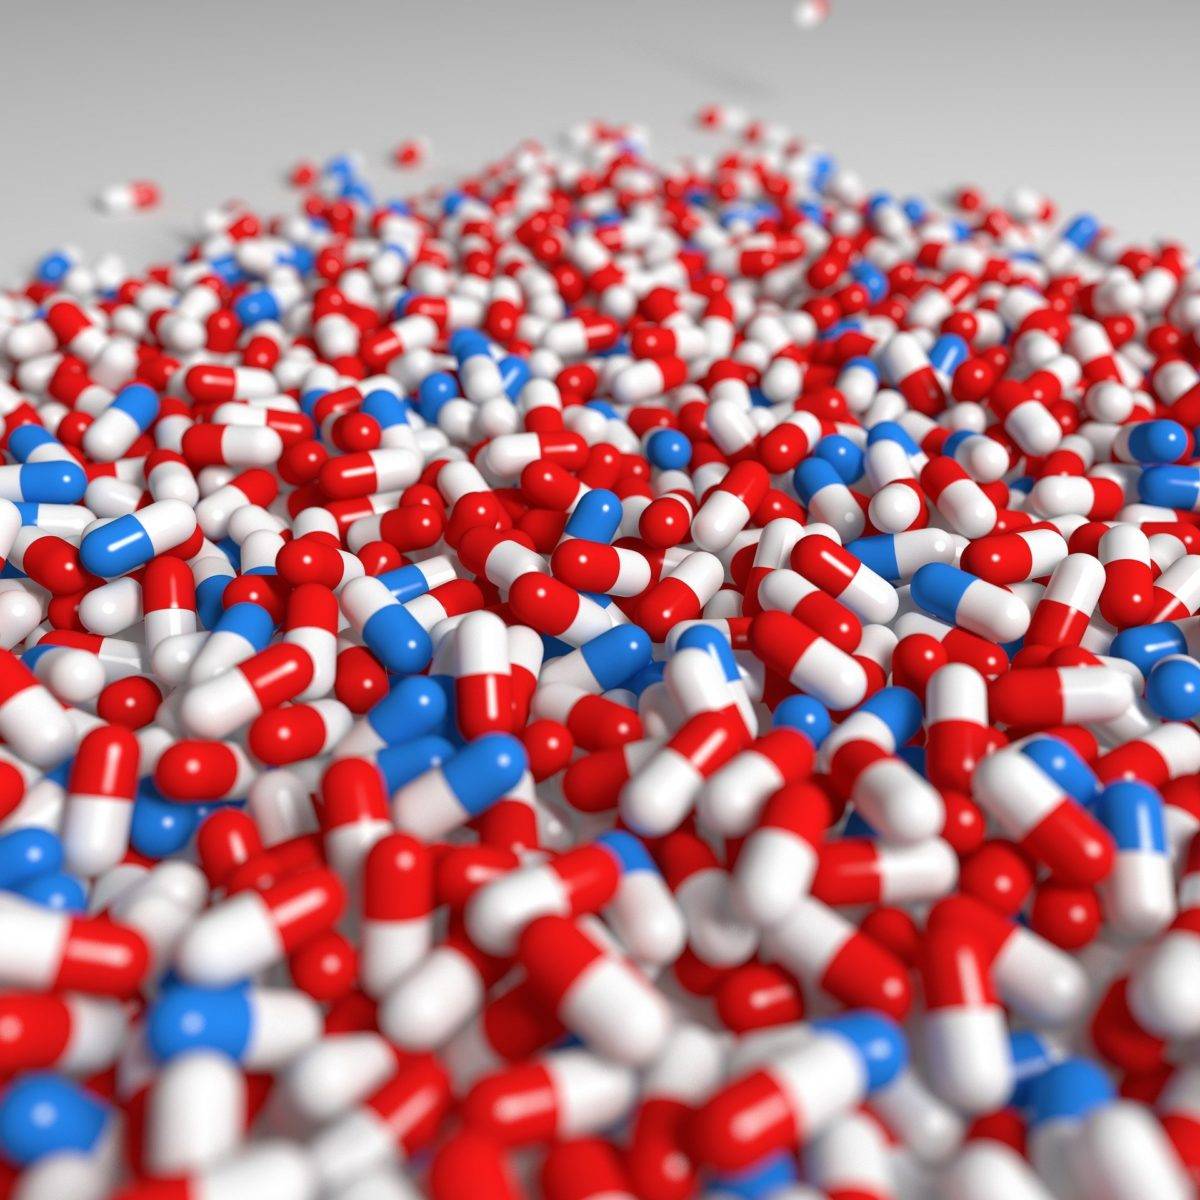 Medicamentos falsificados: práctica ilegal nociva para la salud